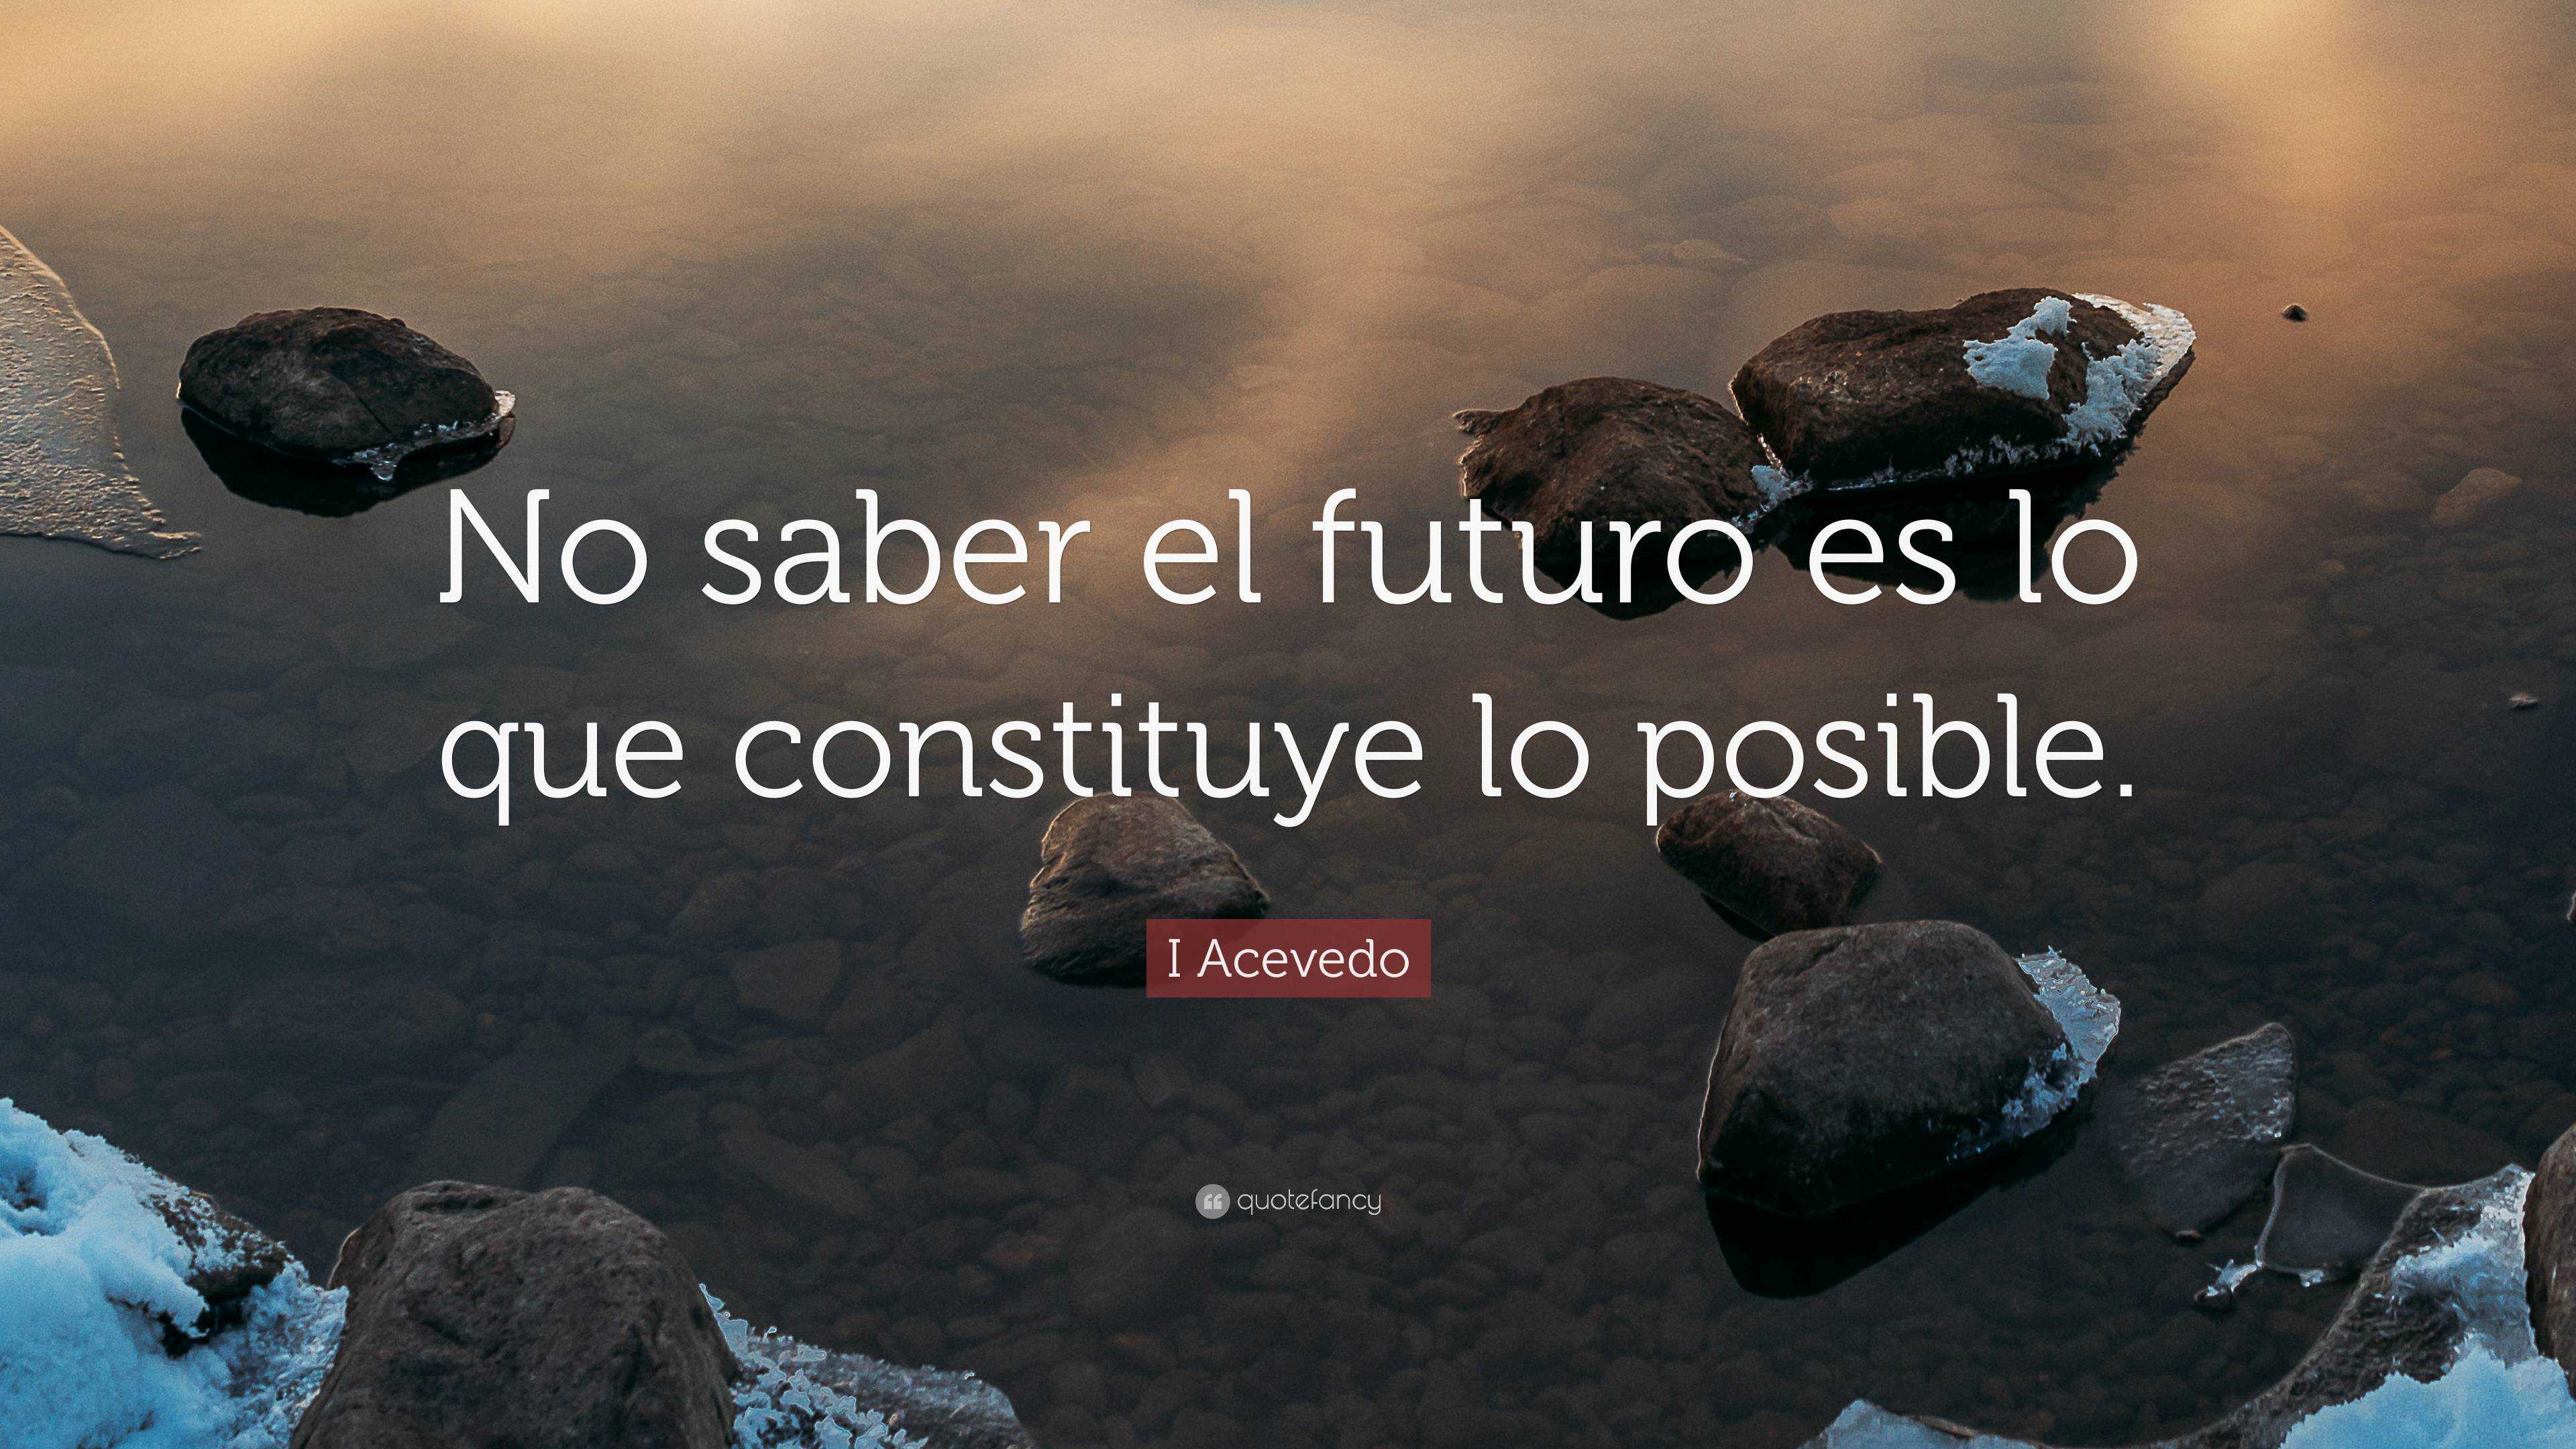 I Acevedo Quote: “No saber el futuro es lo que constituye lo posible.”